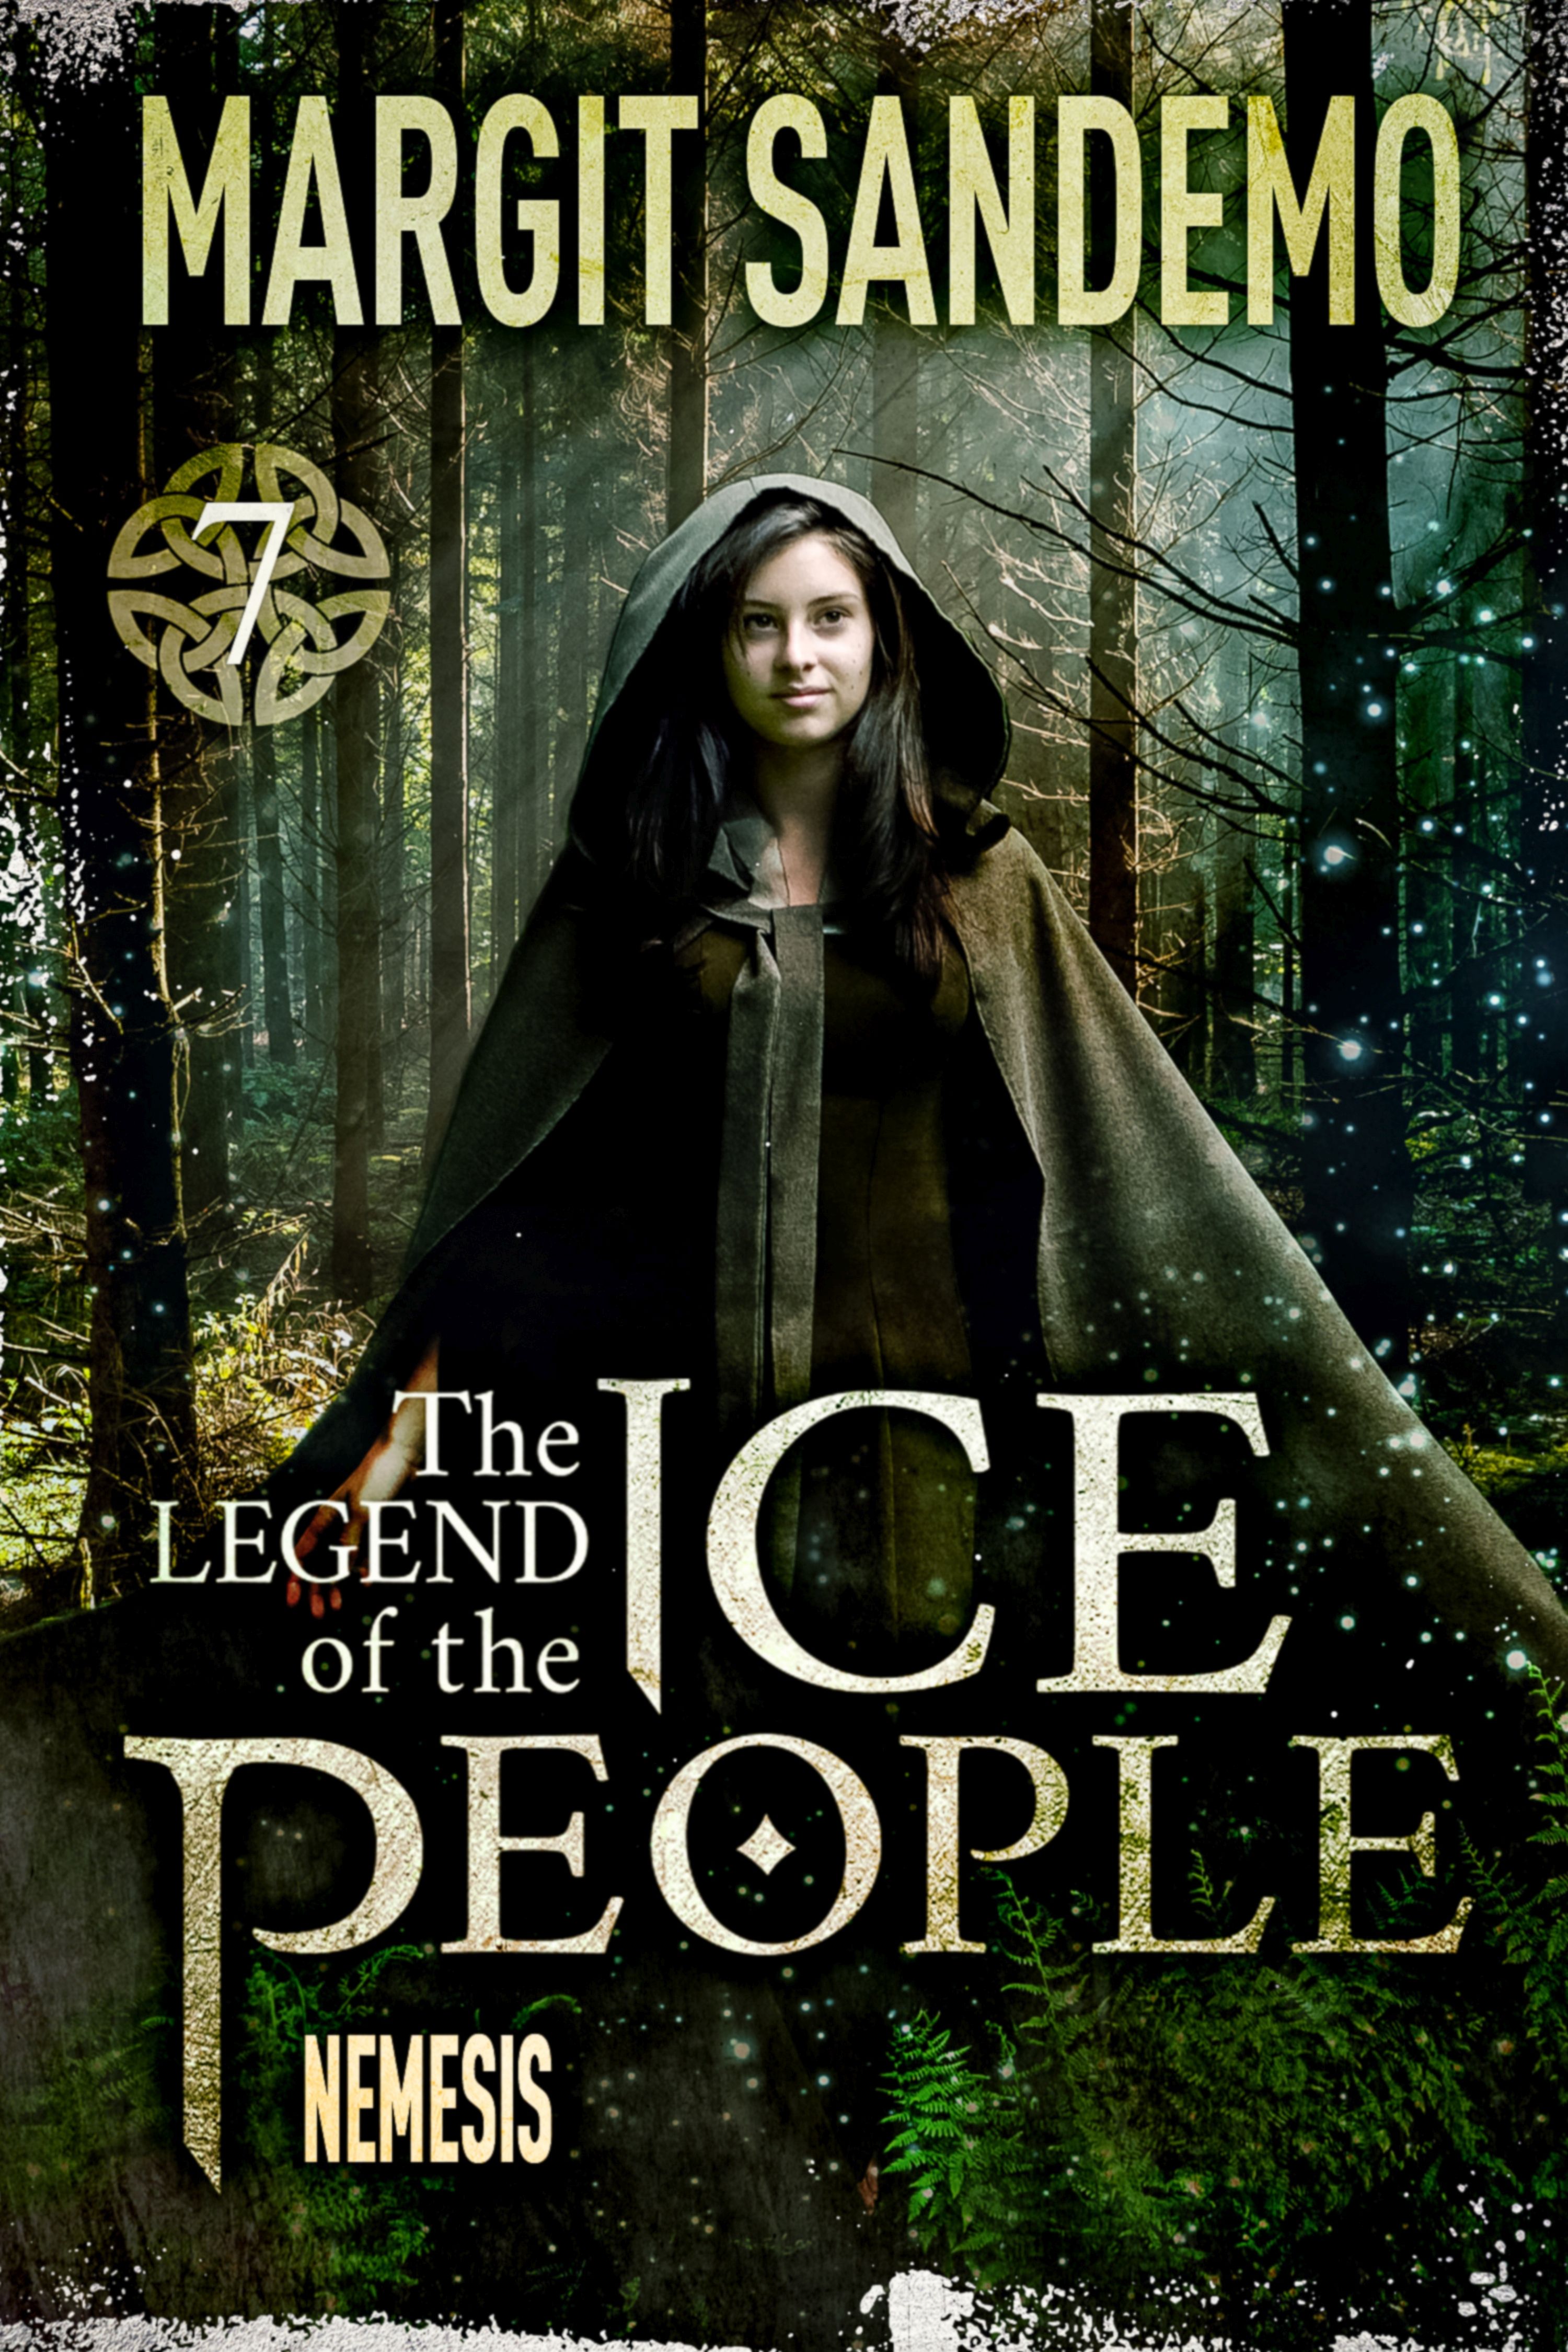 The Ice People 7 - Nemesis, eBook by Margit Sandemo